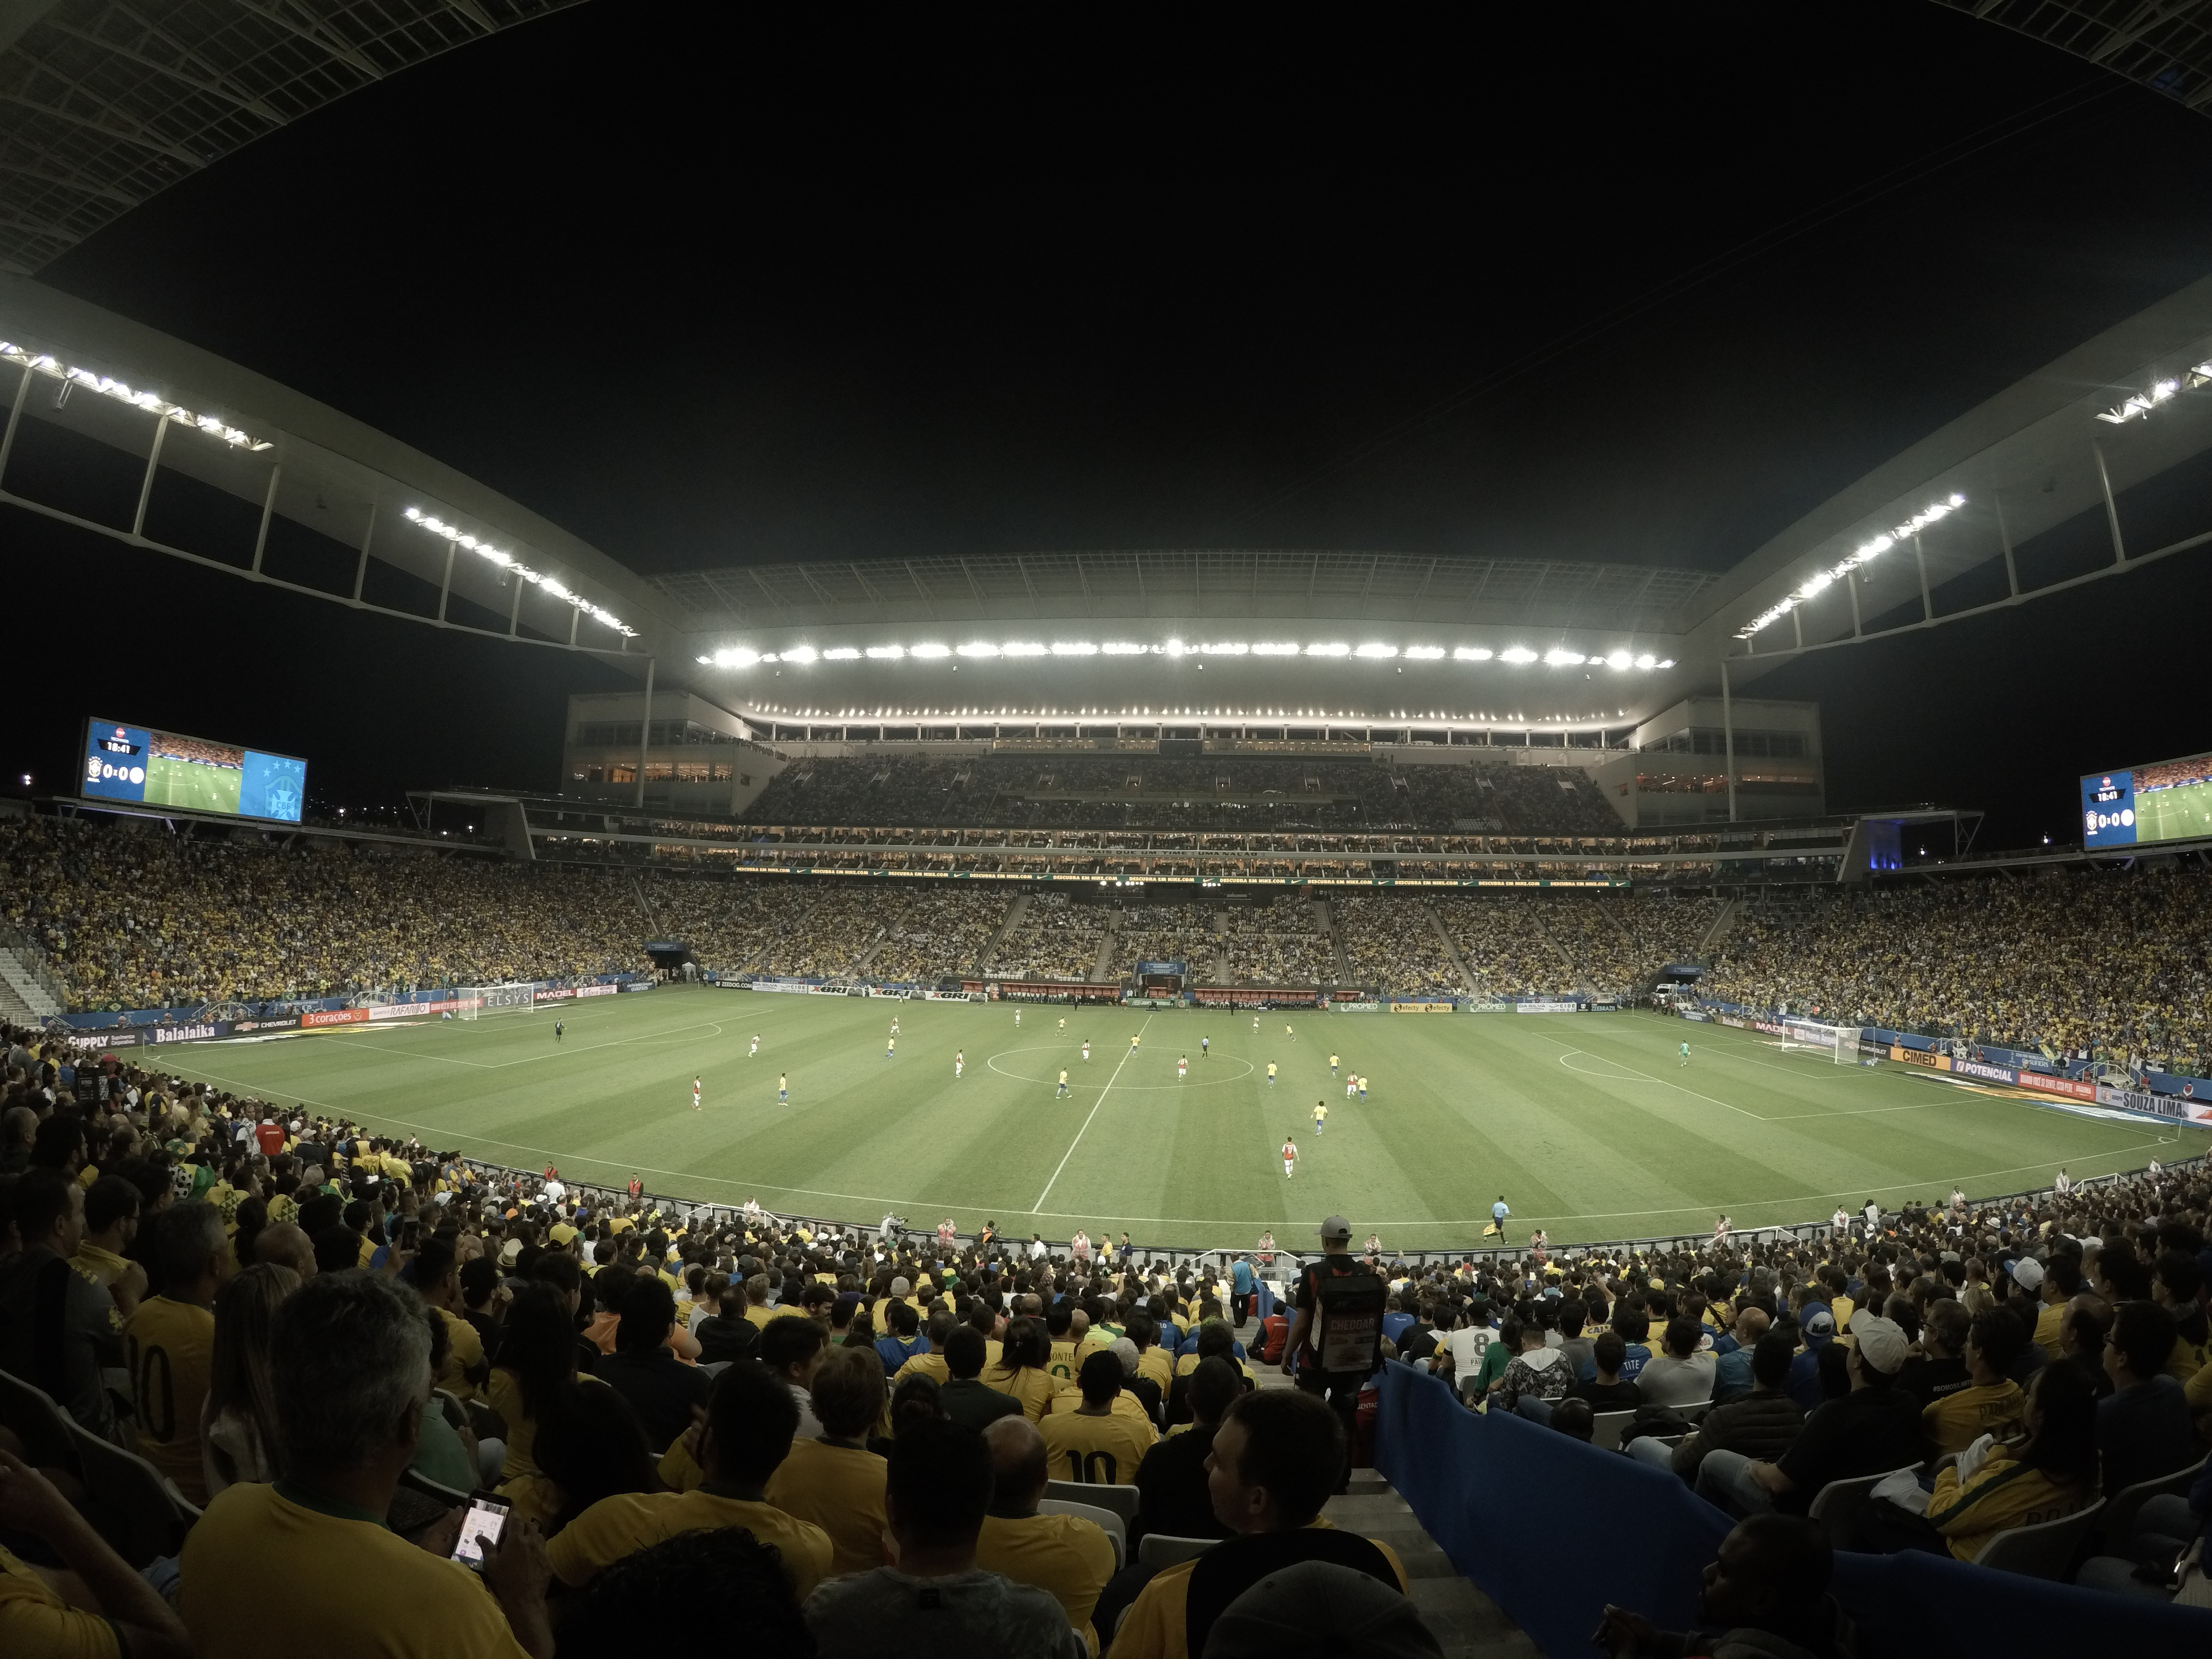 Fotos: Seleção brasileira: O clássico Brasil x Argentina, em